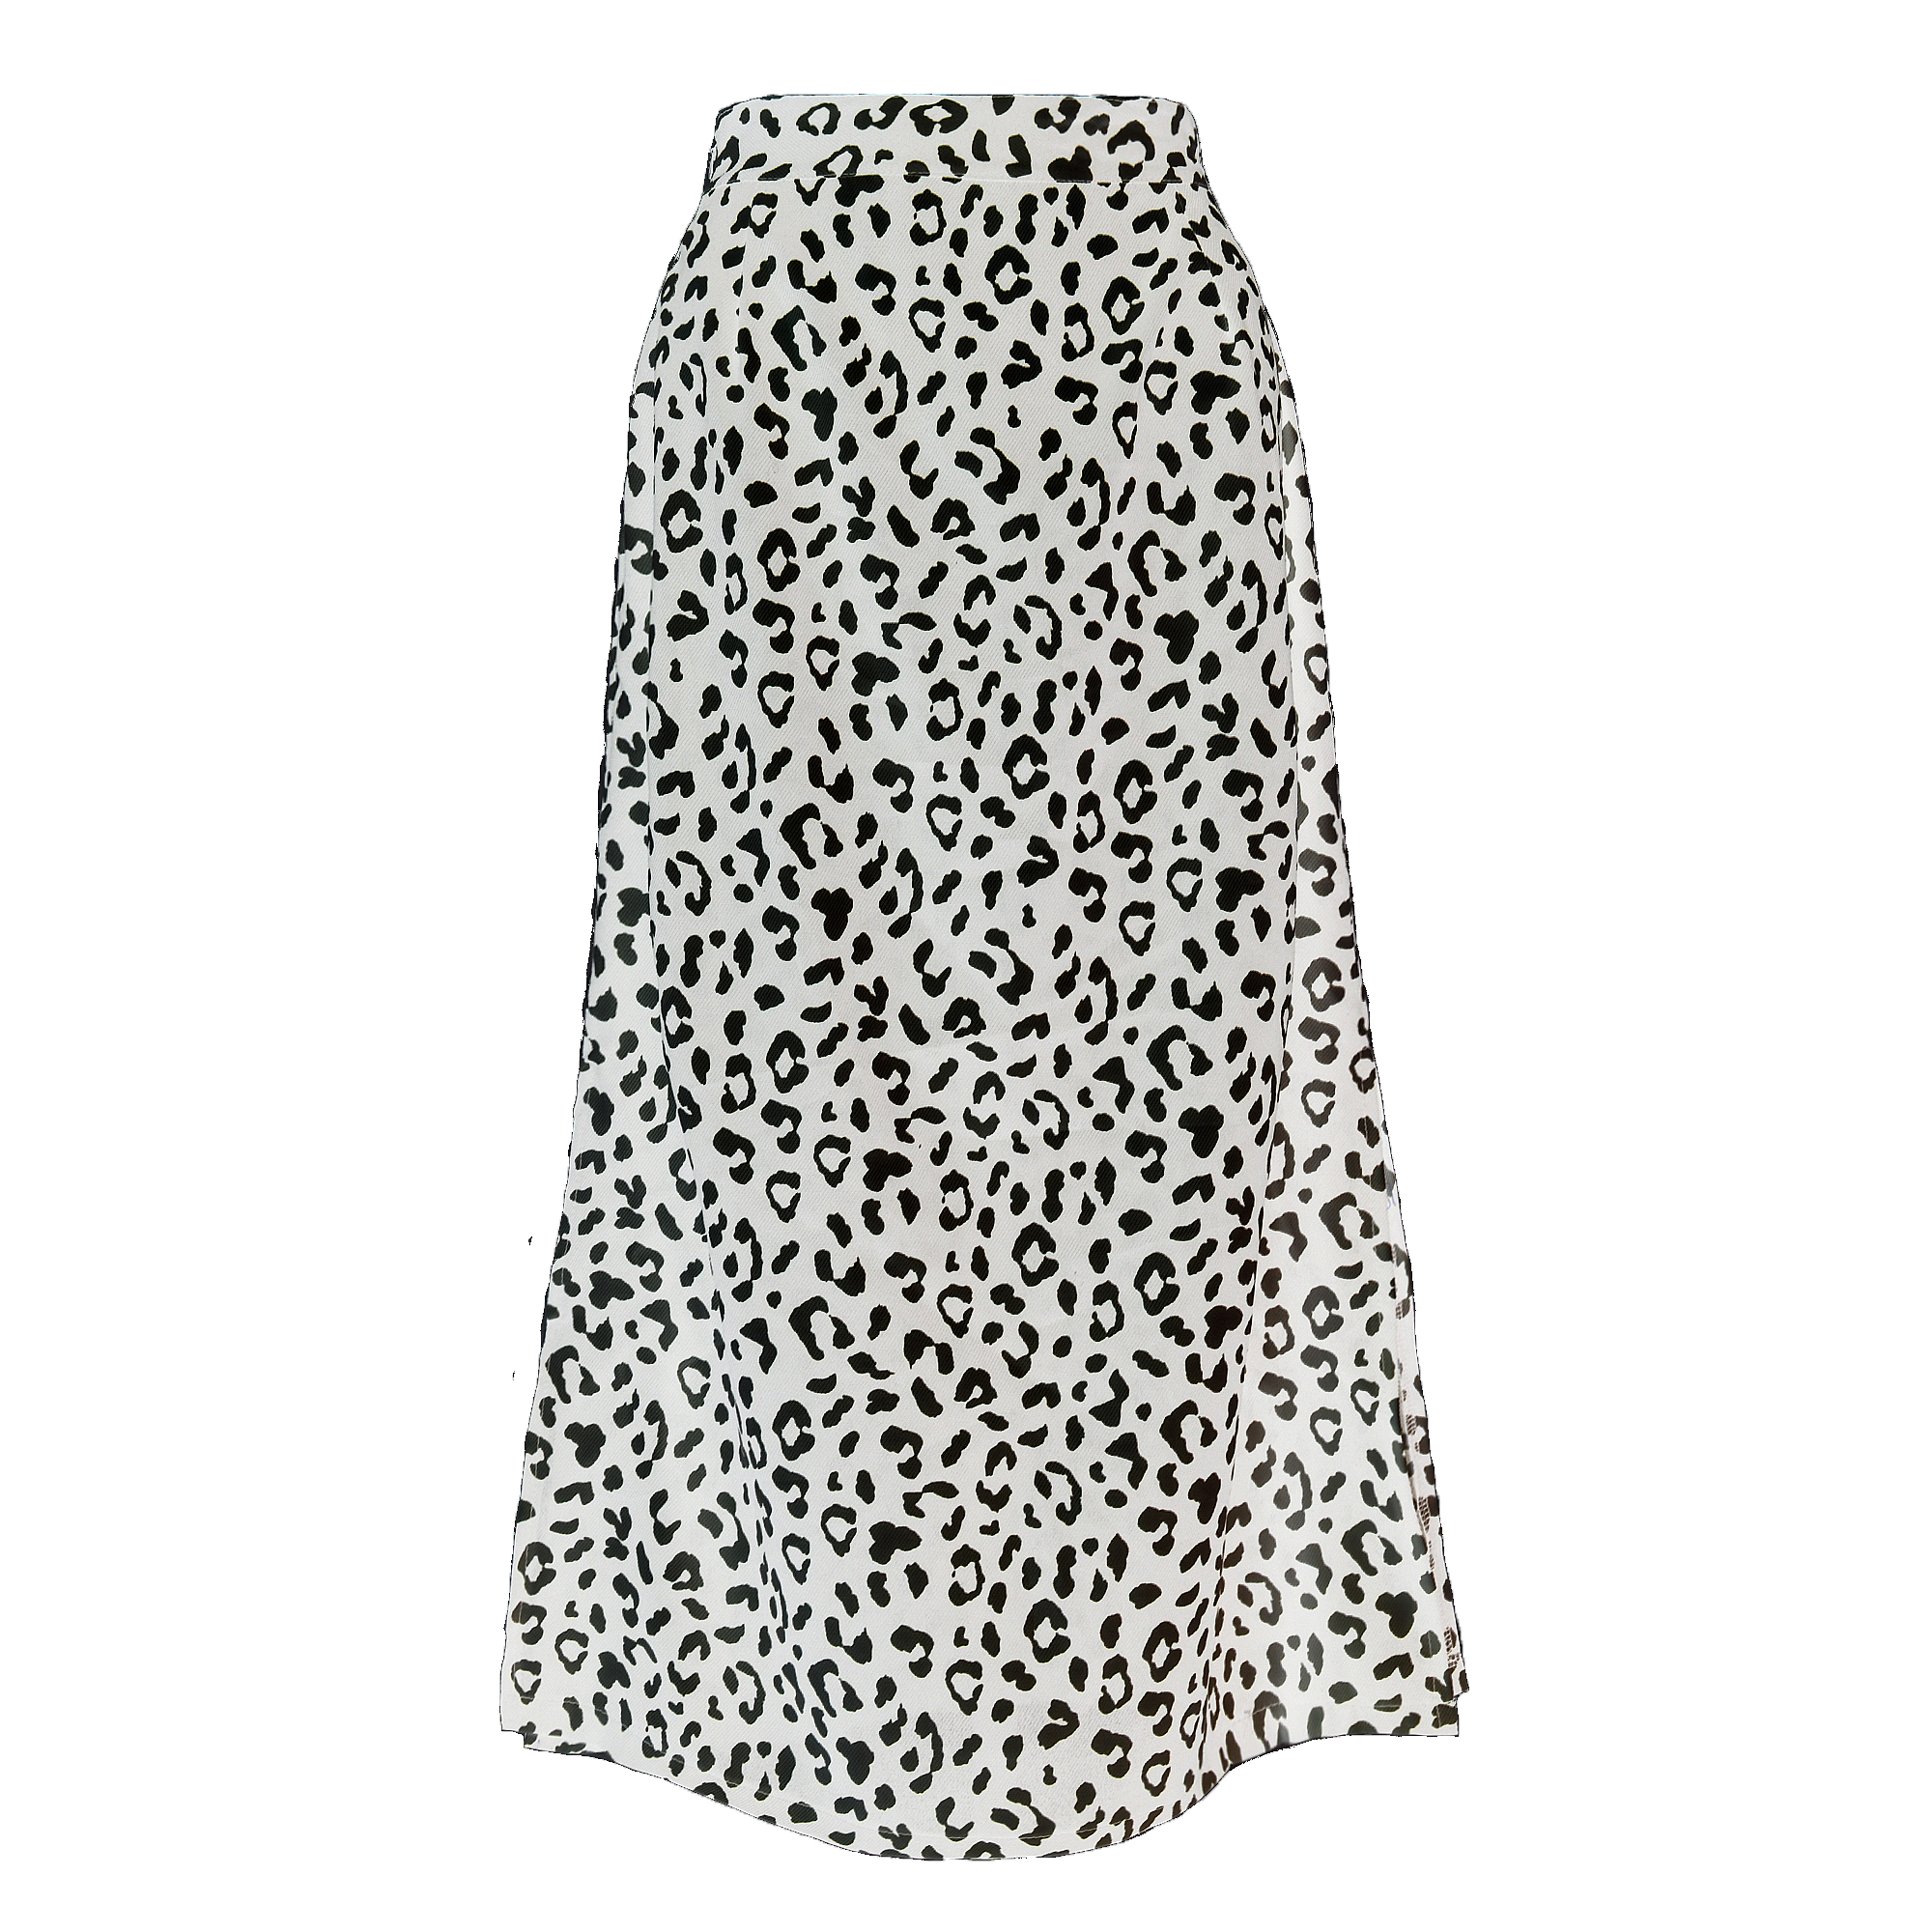 Leopard Dot Print High Fashion Maxi Damenröcke mit elastischer Taille